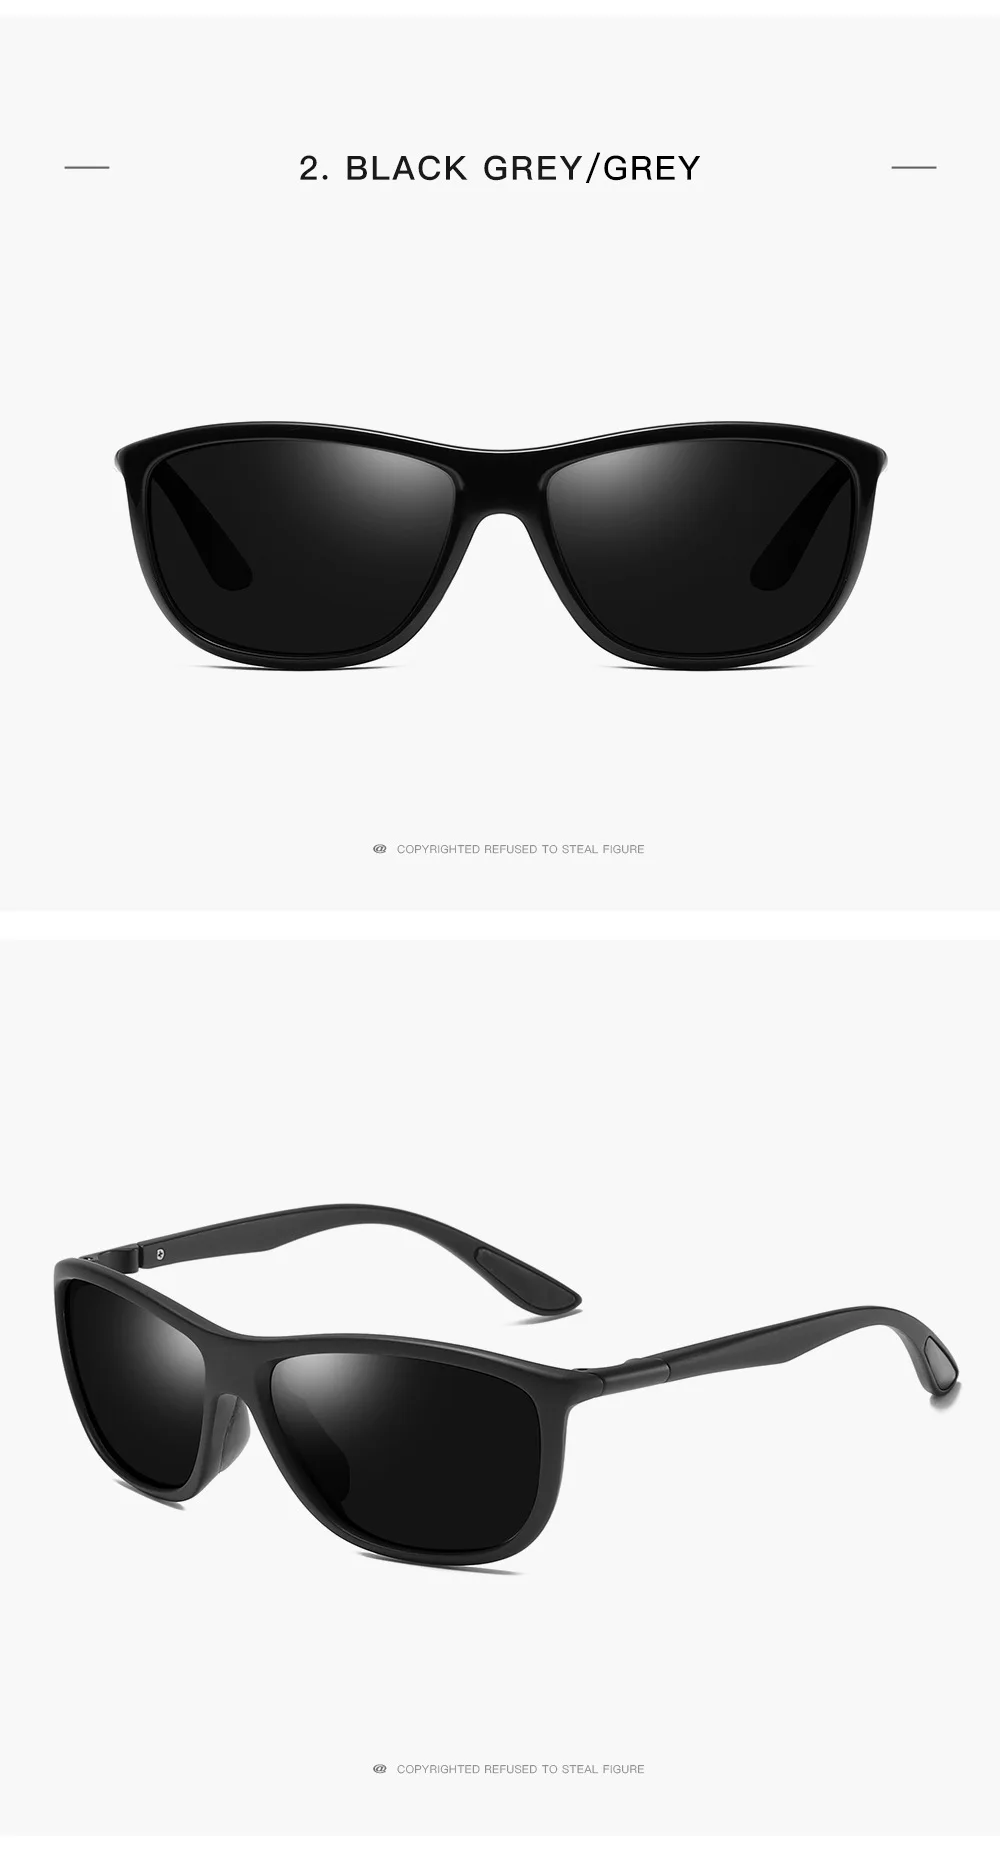 NYWOOH классические мужские солнцезащитные очки, поляризационные, для вождения, солнцезащитные очки, мужские, брендовые, дизайнерские, черные, UV400, оттенки